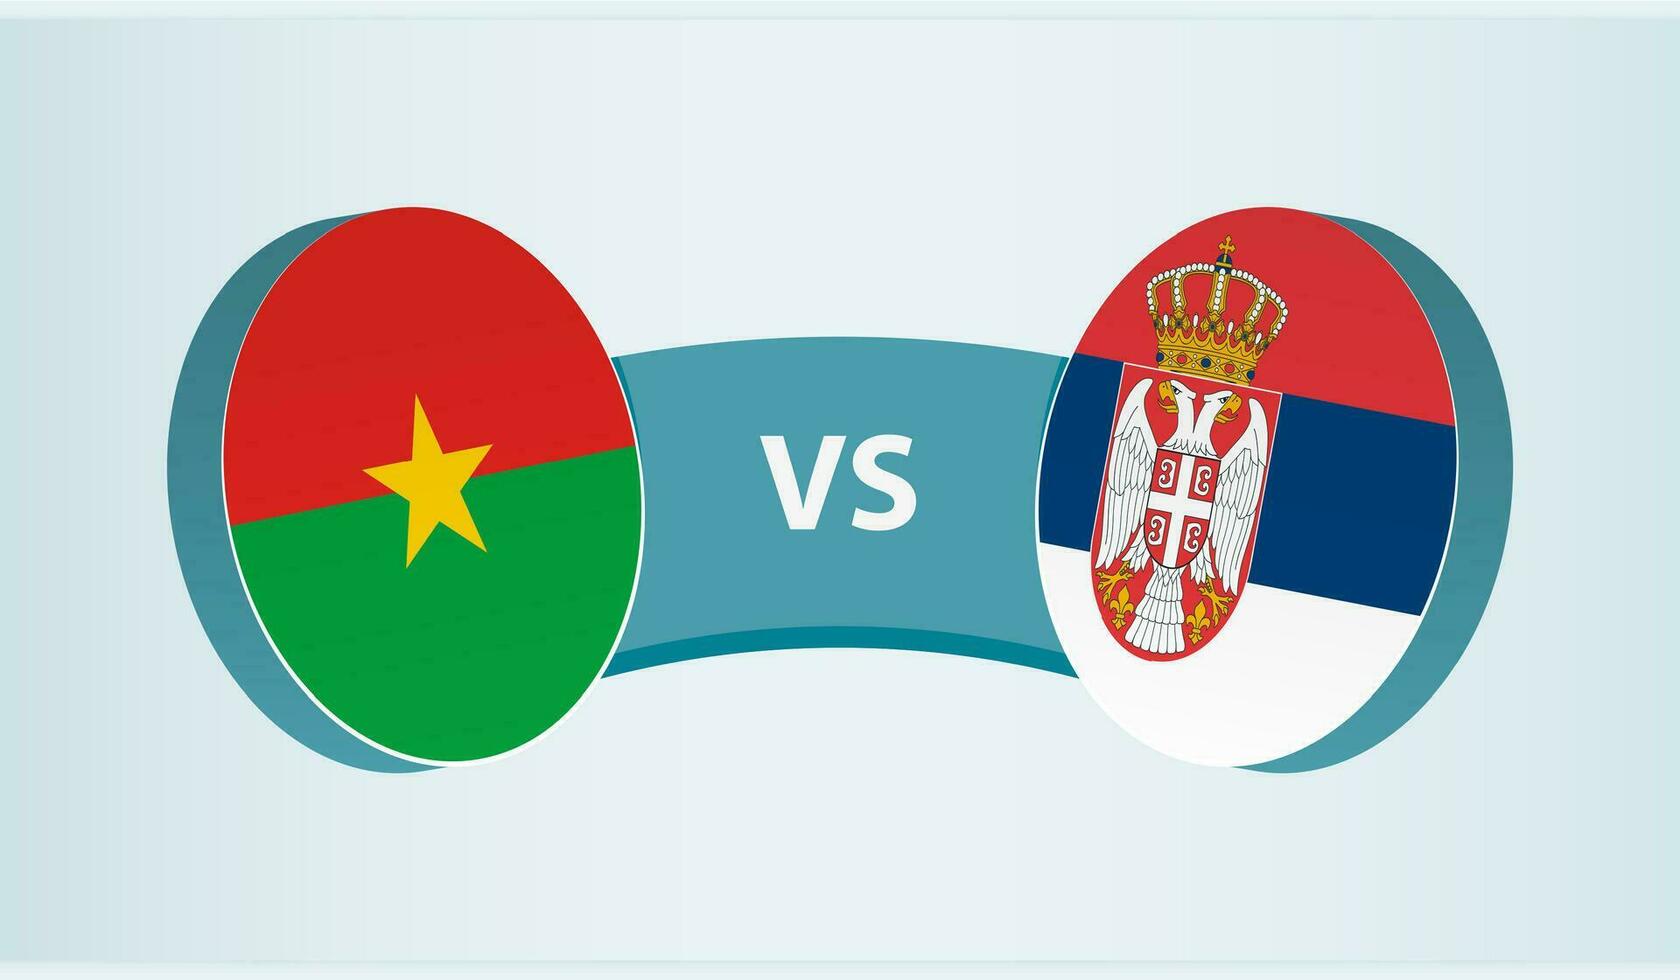 Burkina faso mot Serbien, team sporter konkurrens begrepp. vektor